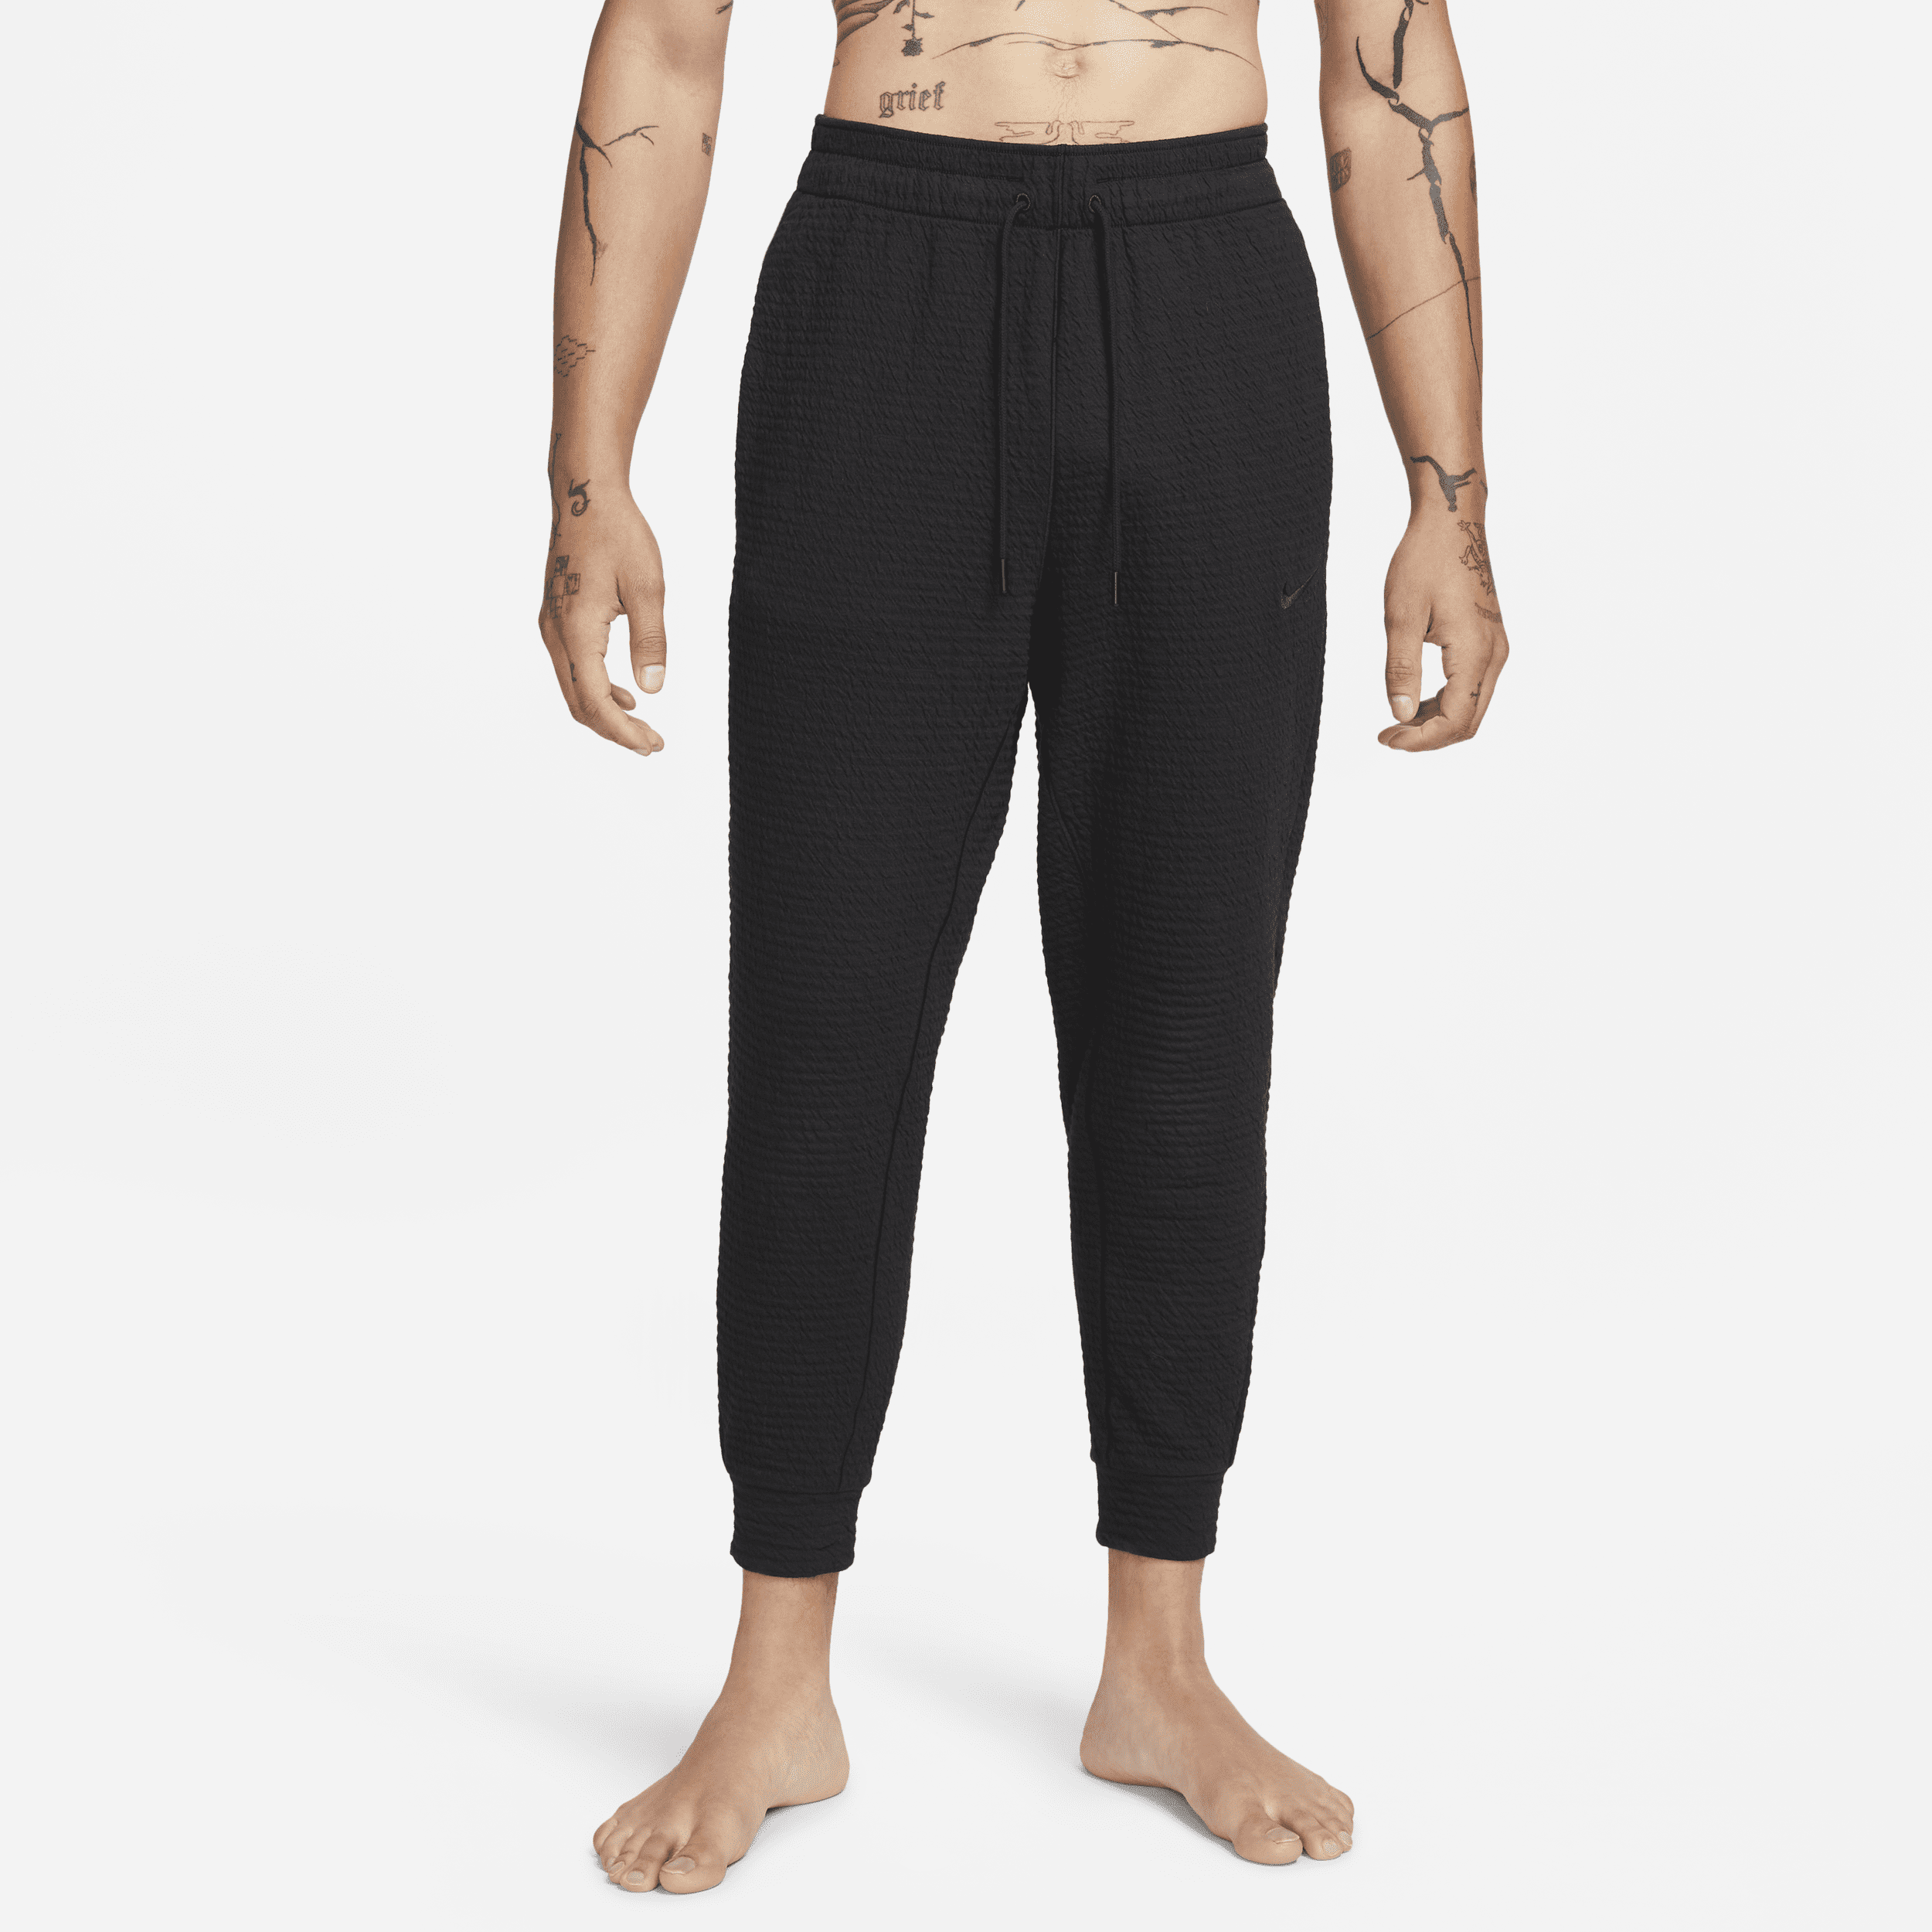 Nike Yoga Pantalón Dri-FIT - Hombre - Negro